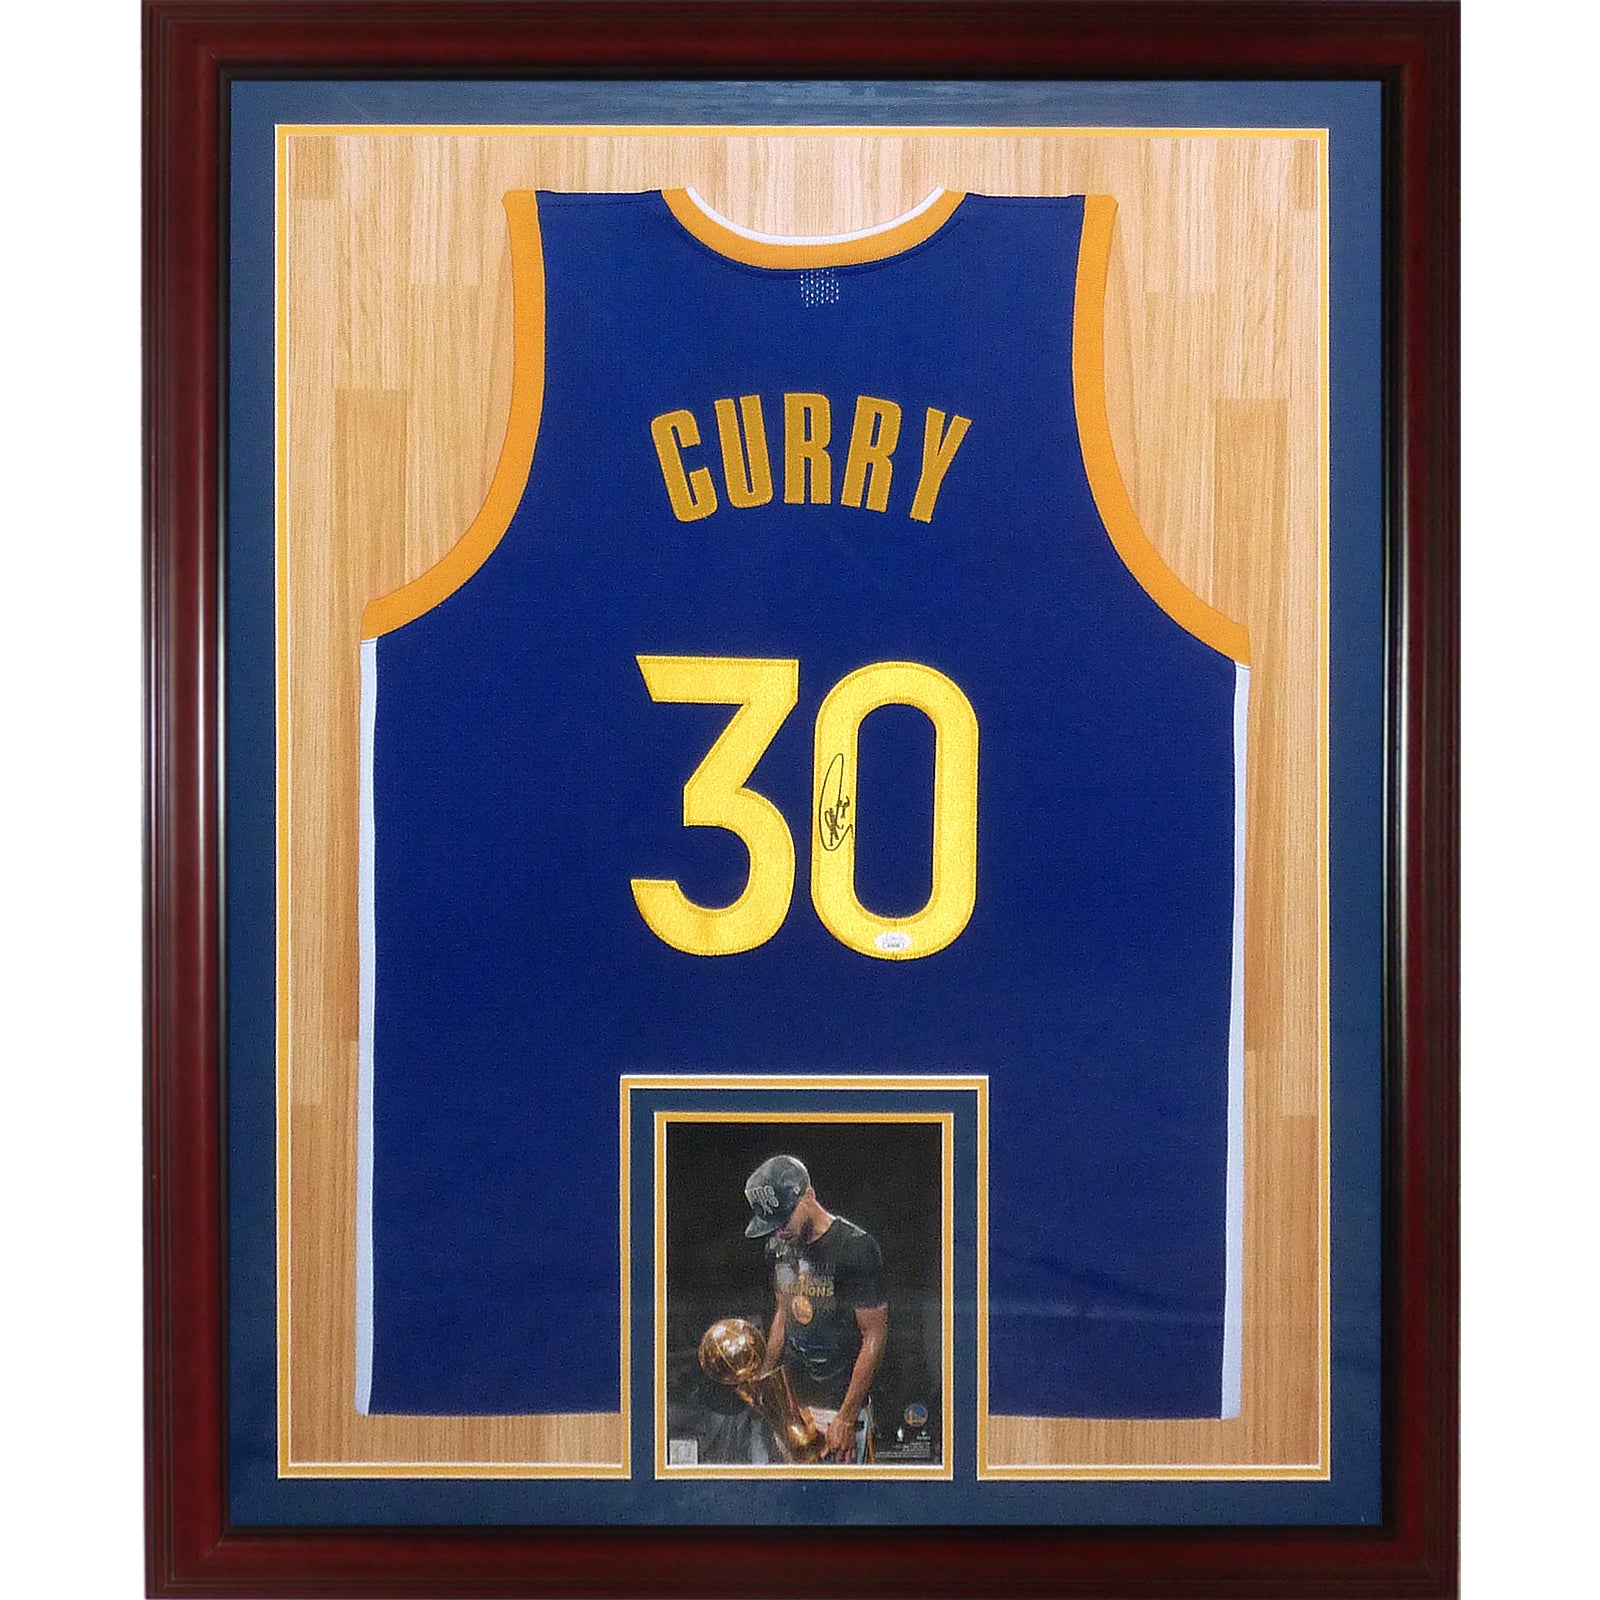 Stephan Curry Golden State Warriors #30 Jersey player shirt